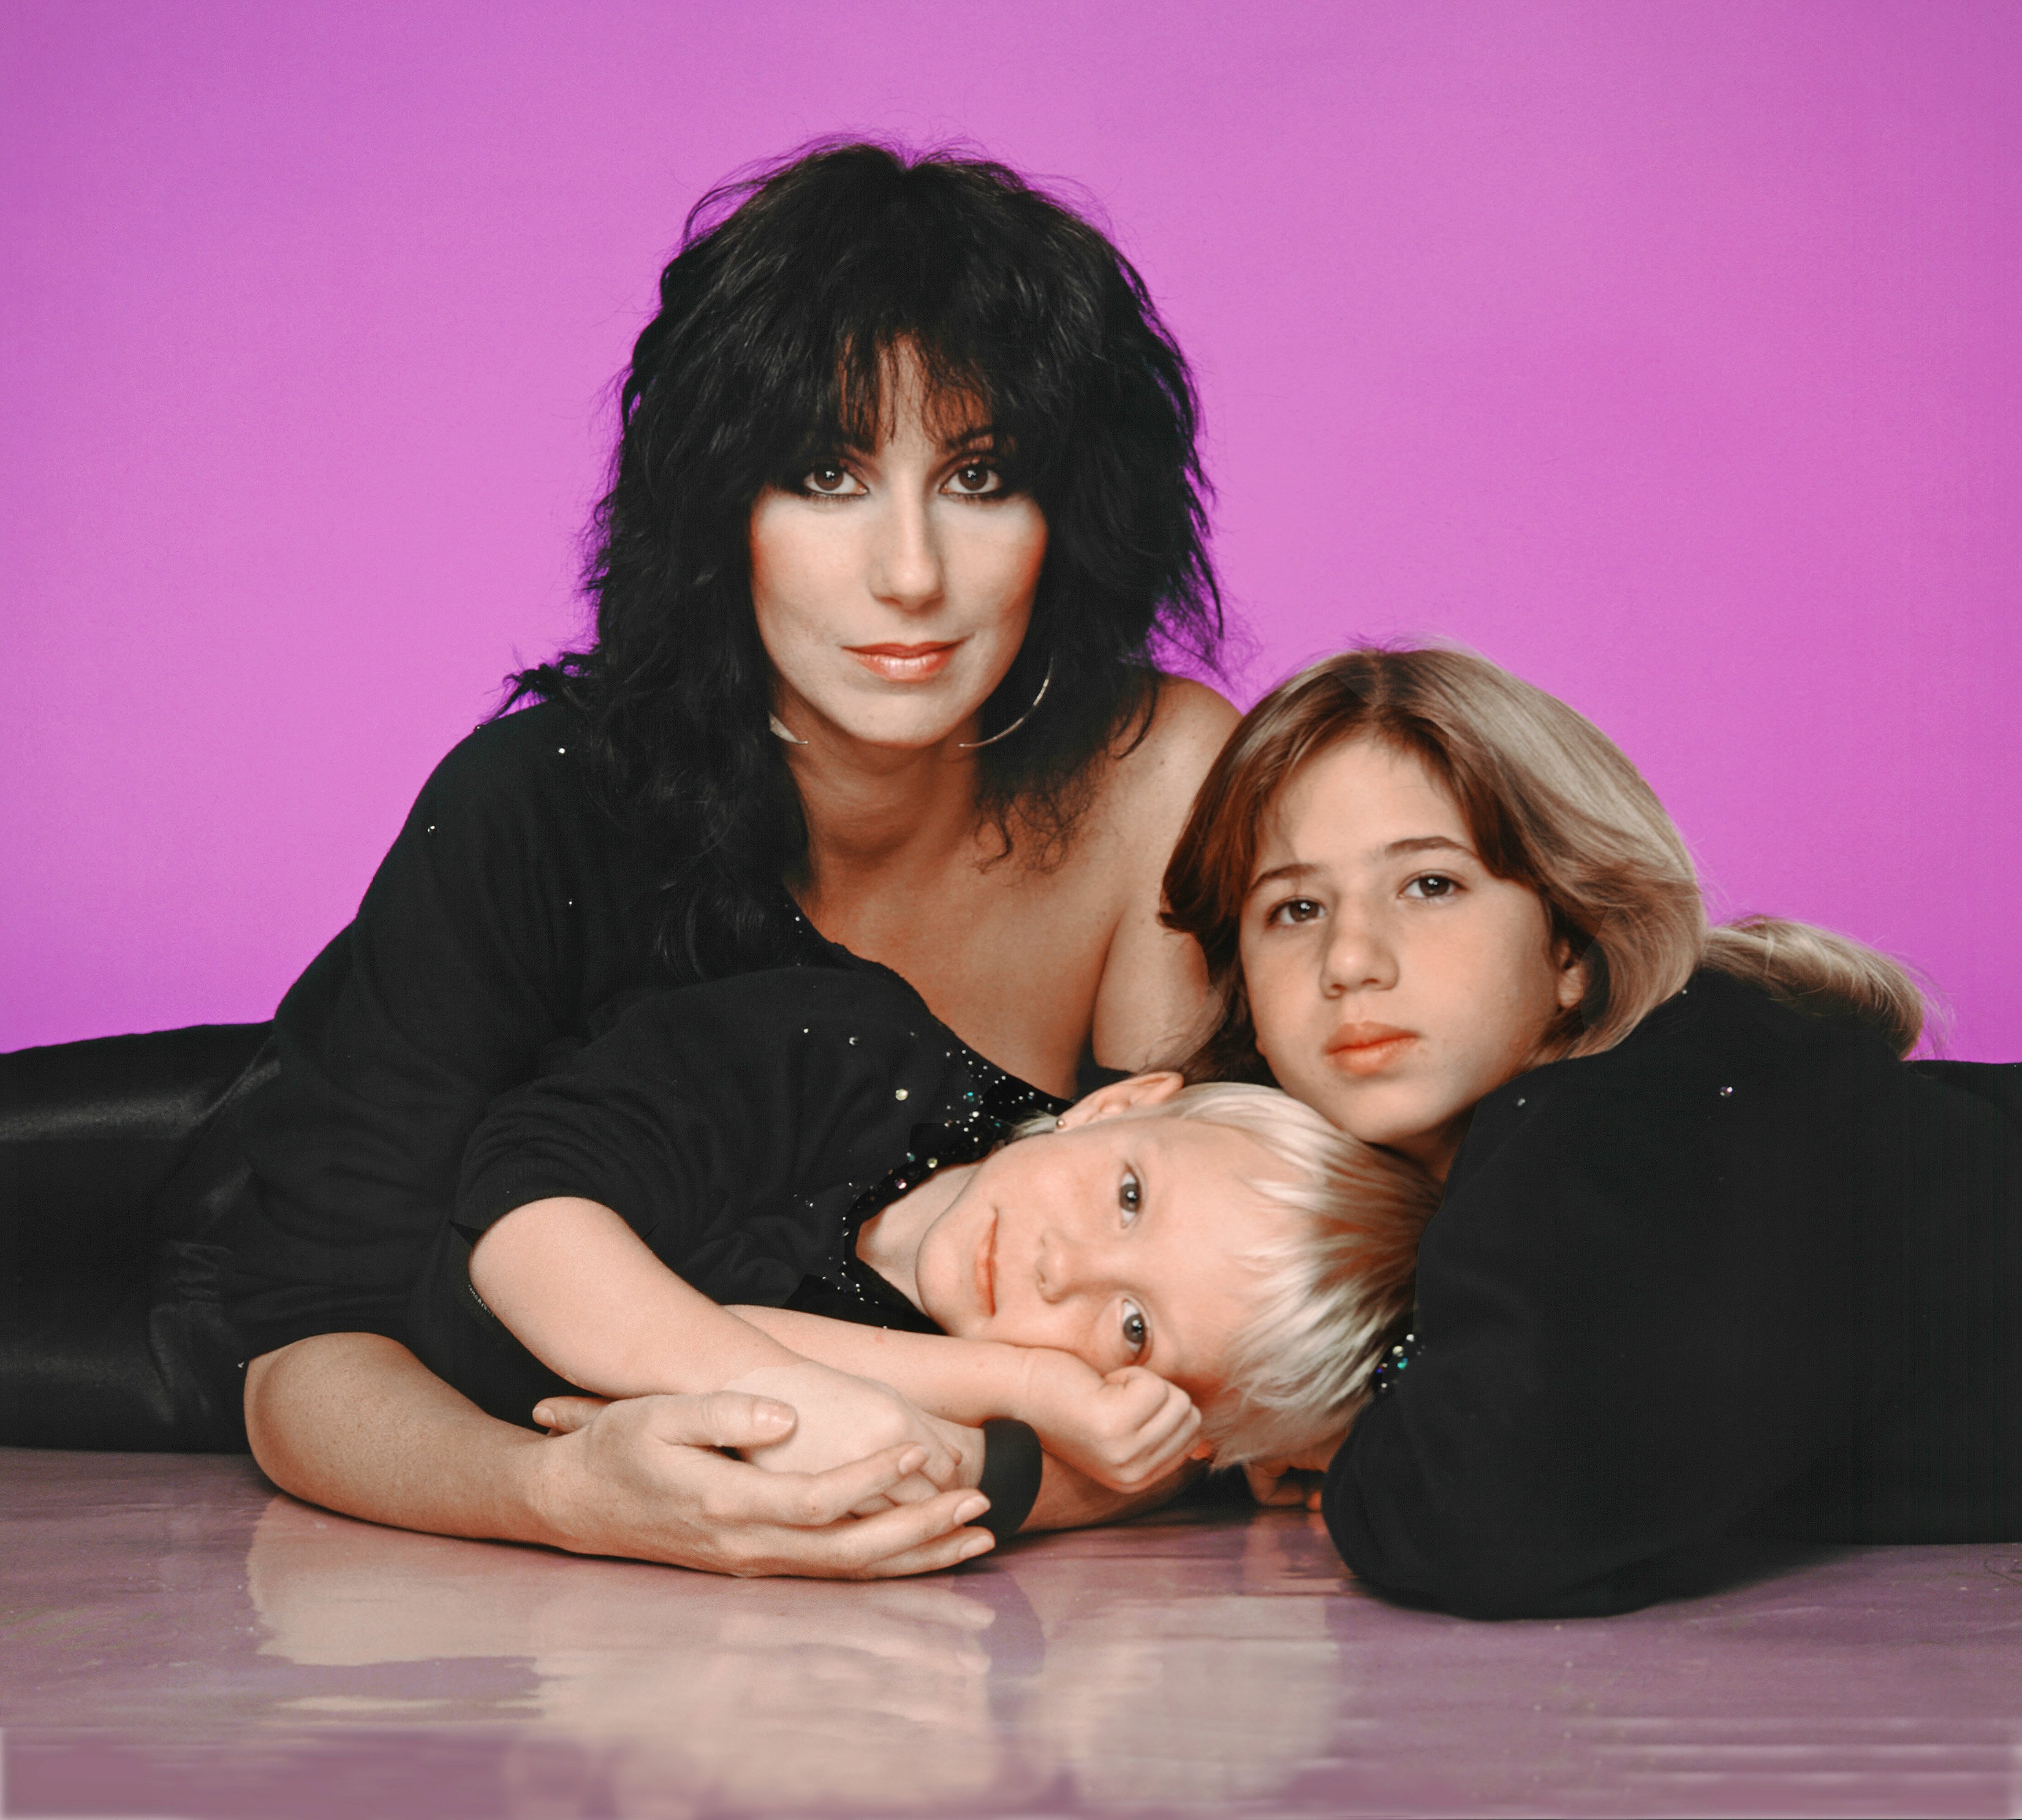 Cher con sus hijos Chastity Bono y Elijah Allman el 1 de enero de 1980 en Los Ángeles, California | Fto: Getty images